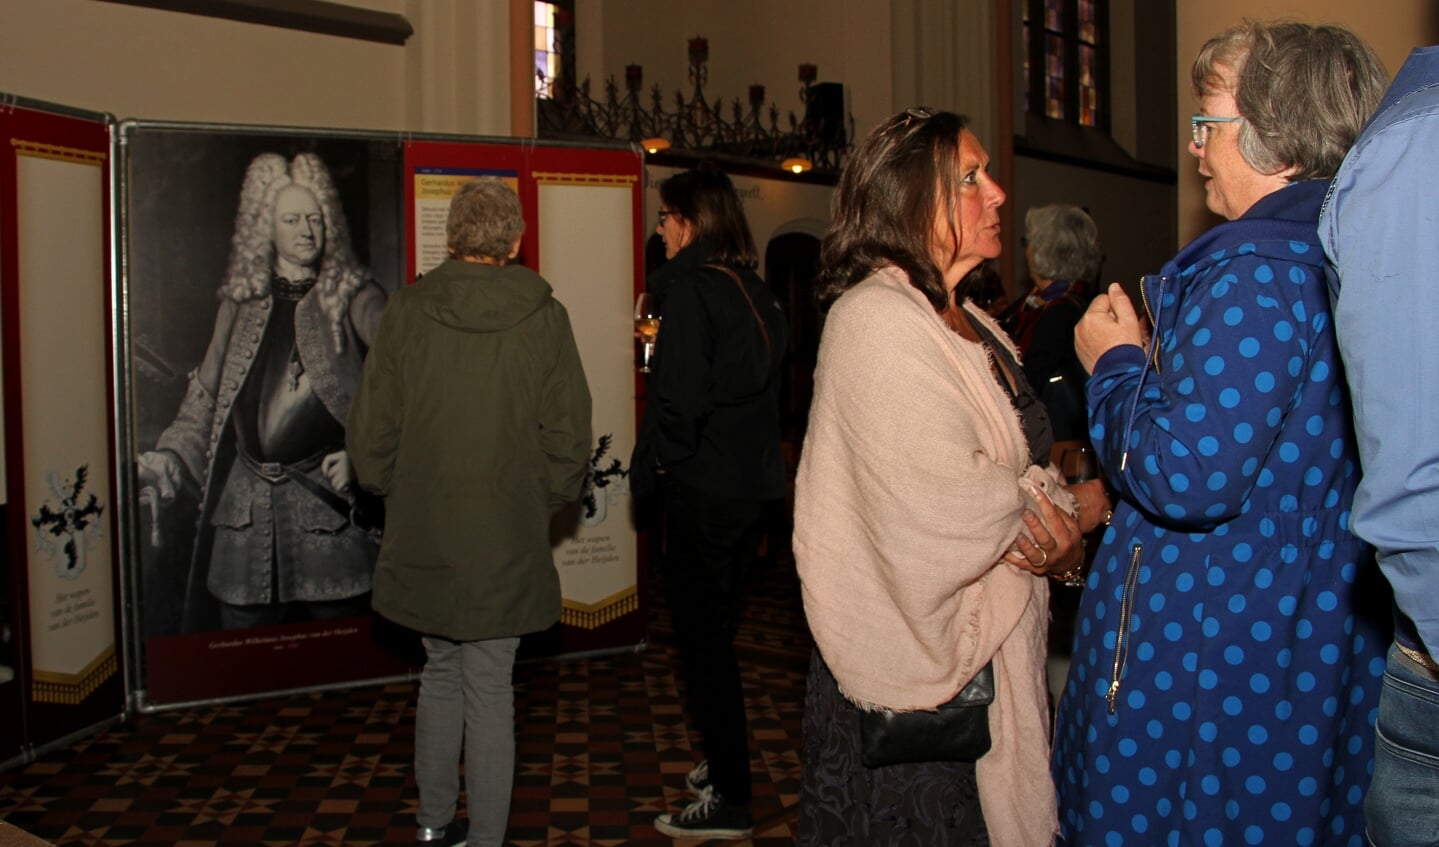 De expositie wordt bewonderd door de gasten. Foto: Liesbeth Spaansen